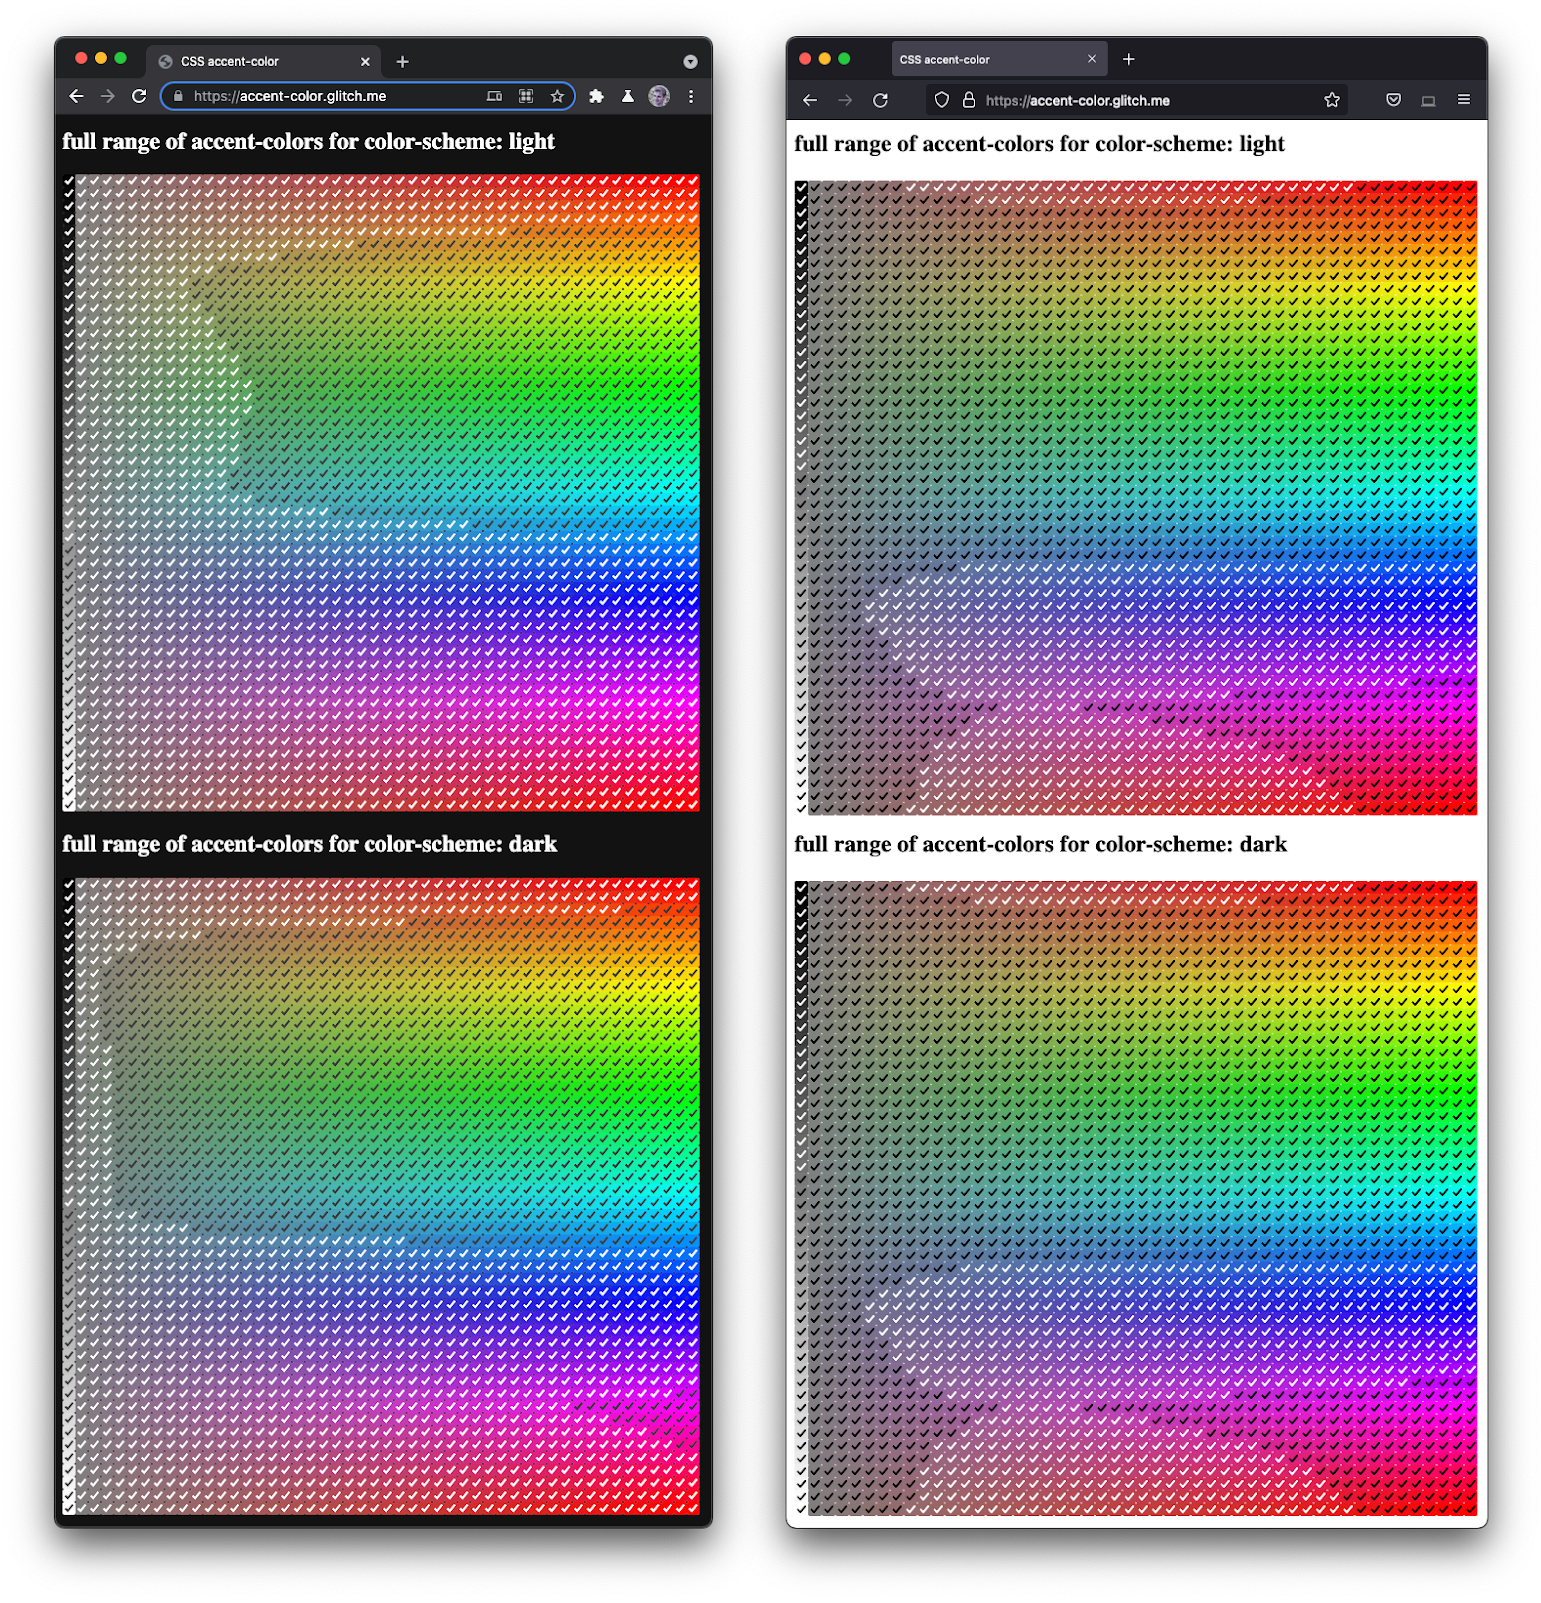 ภาพหน้าจอของ Firefox และ Chromium ที่แสดงคู่กัน ซึ่งแสดงช่องทำเครื่องหมายทุกแบบในเฉดสีและความมืดที่หลากหลาย